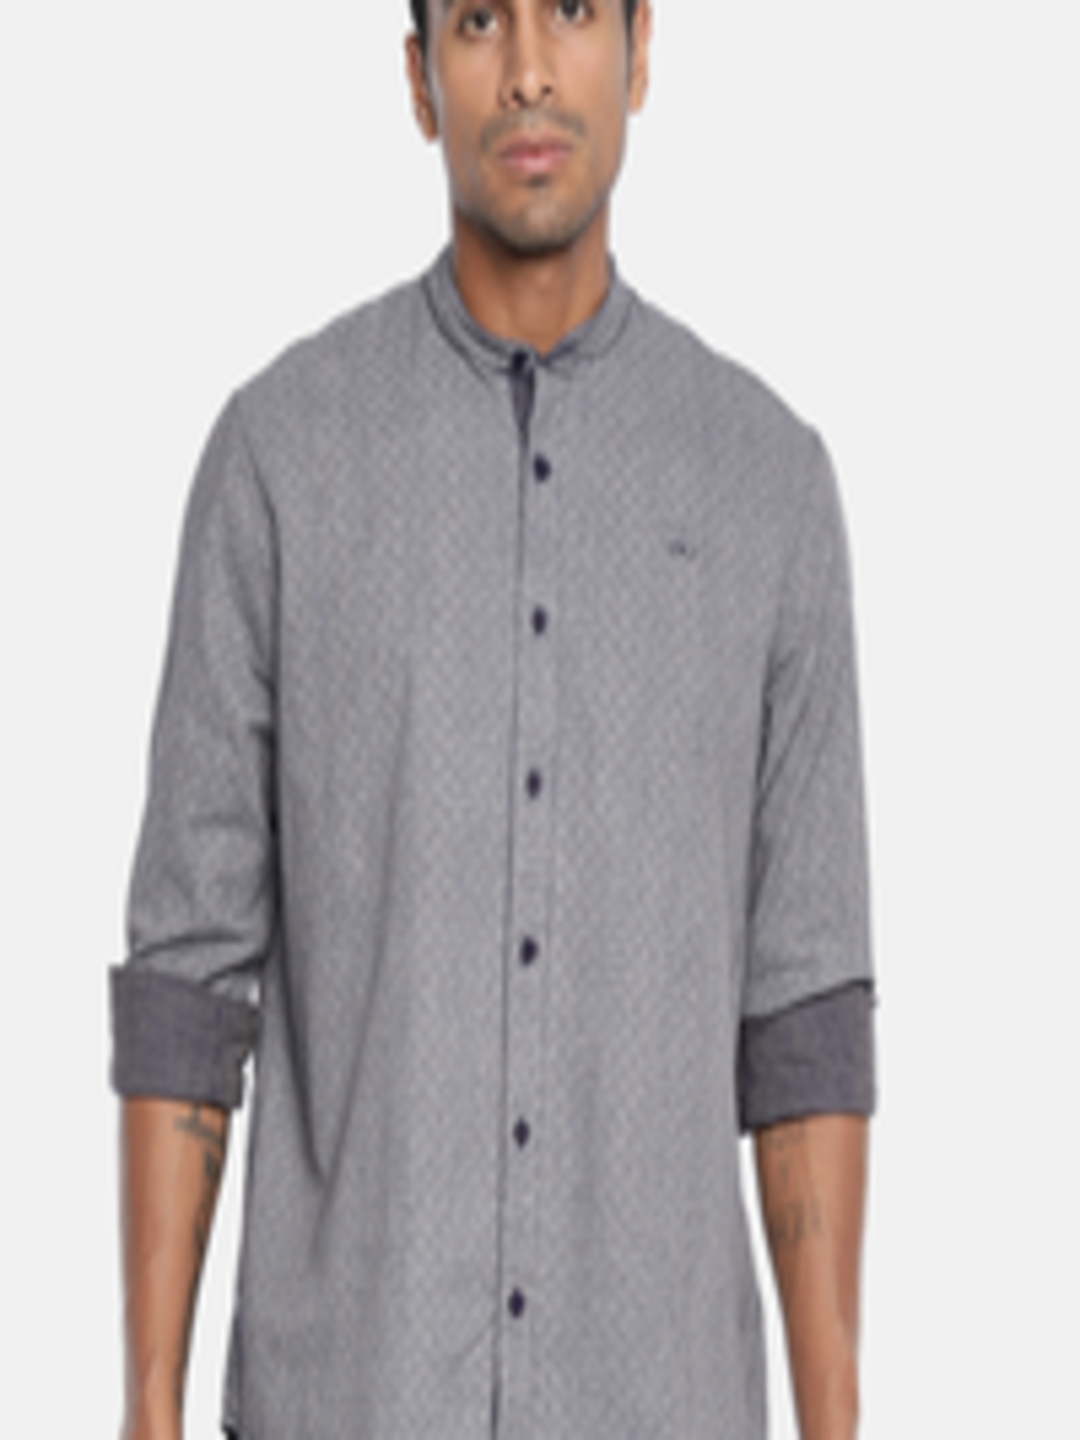 Buy Amparo Berezi Men Grey & Blue Slim Fit Printed Casual Shirt ...